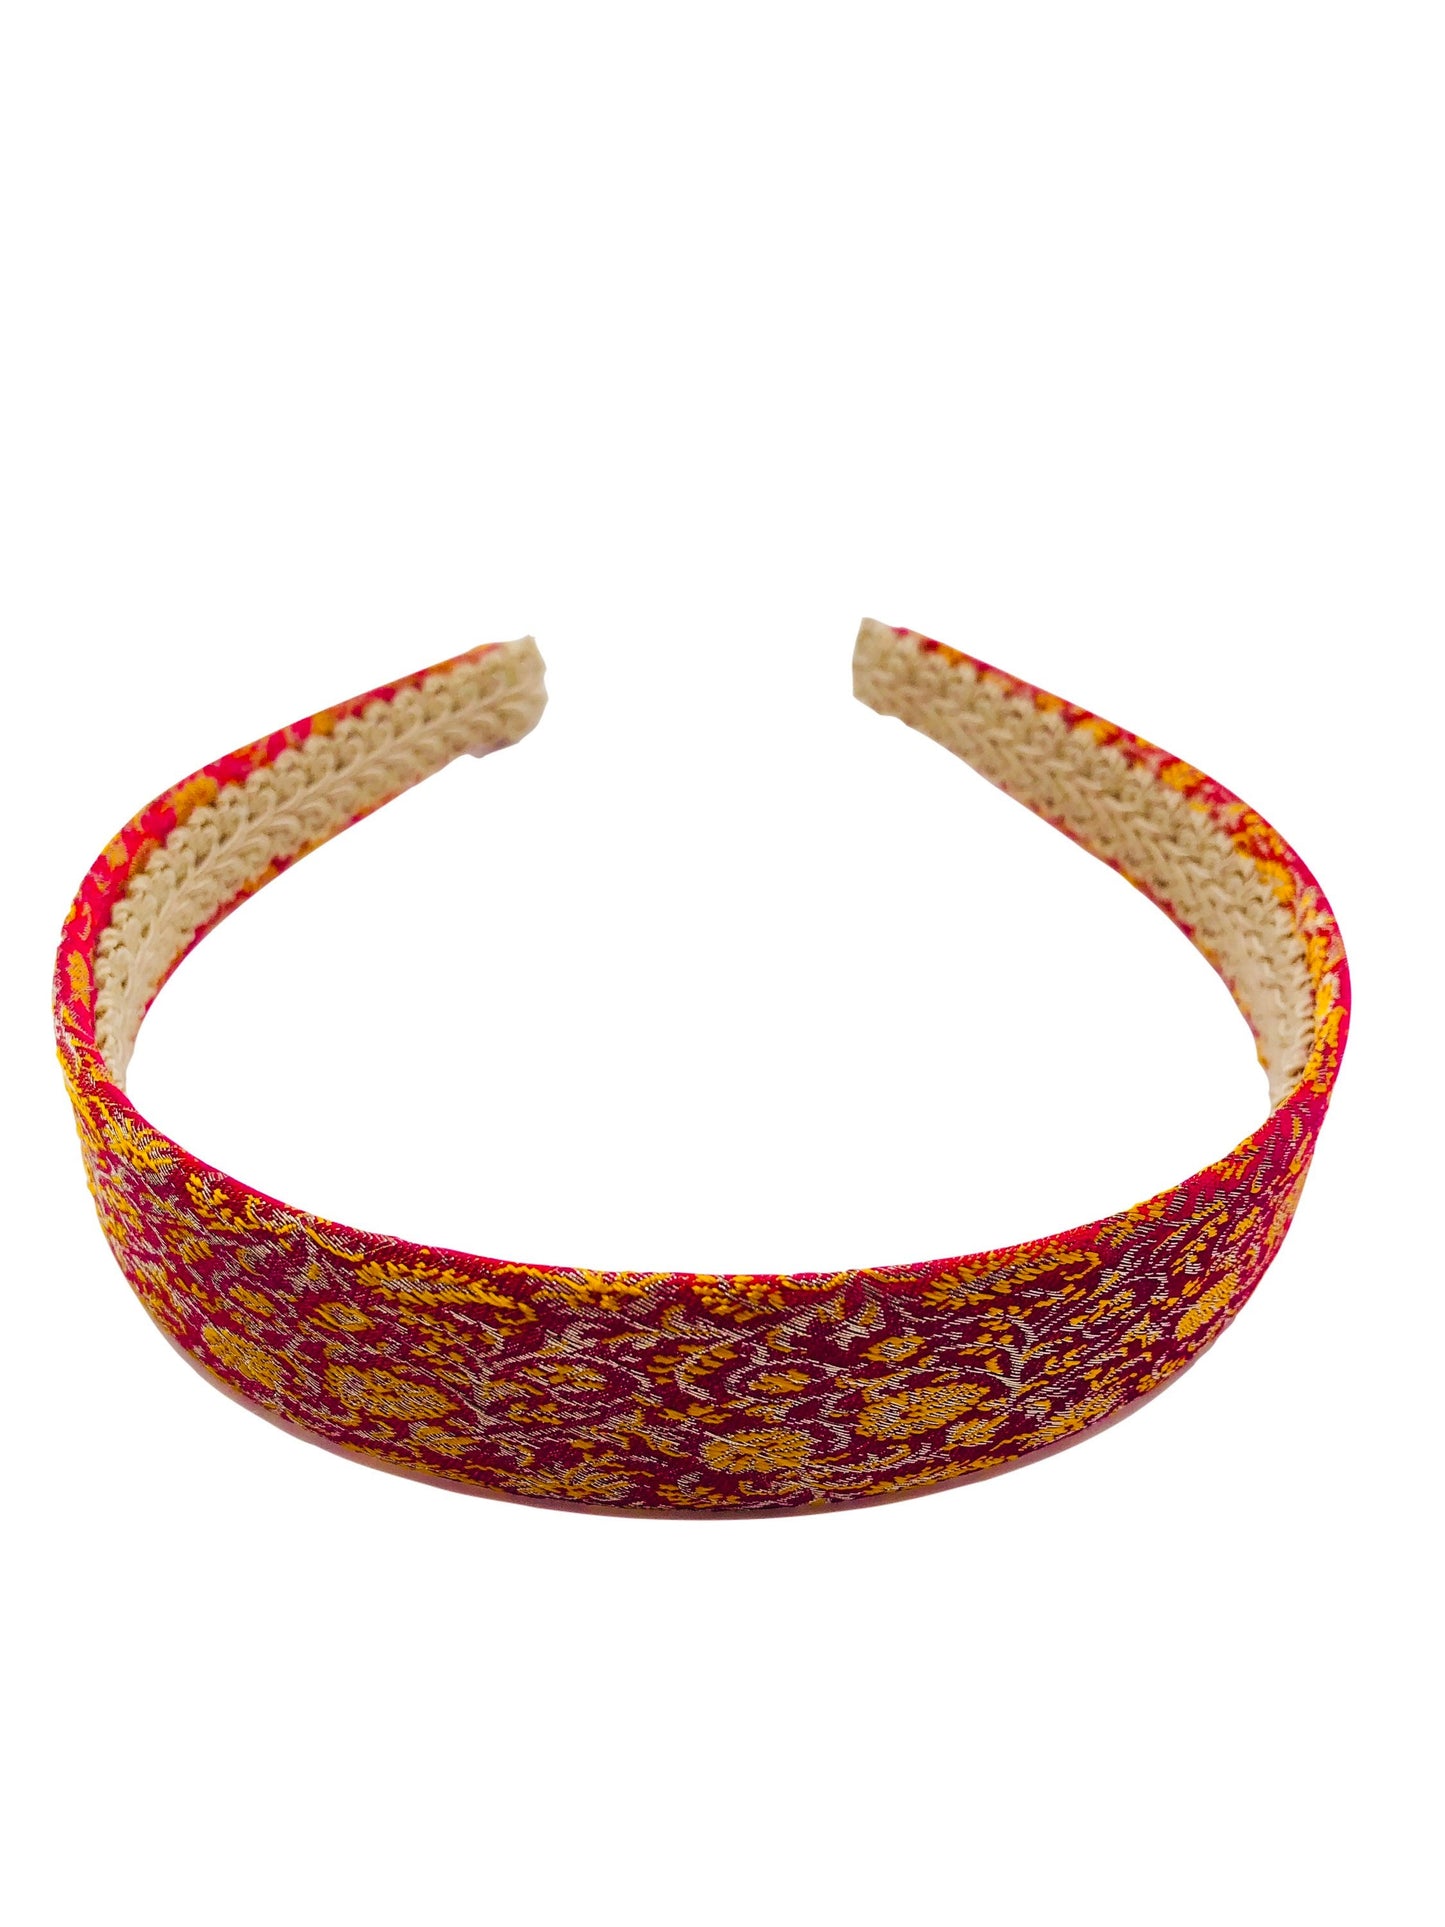 Karin's Garden 1" Sari Silk Headband.  Made in the USA.  Fabric from Delhi